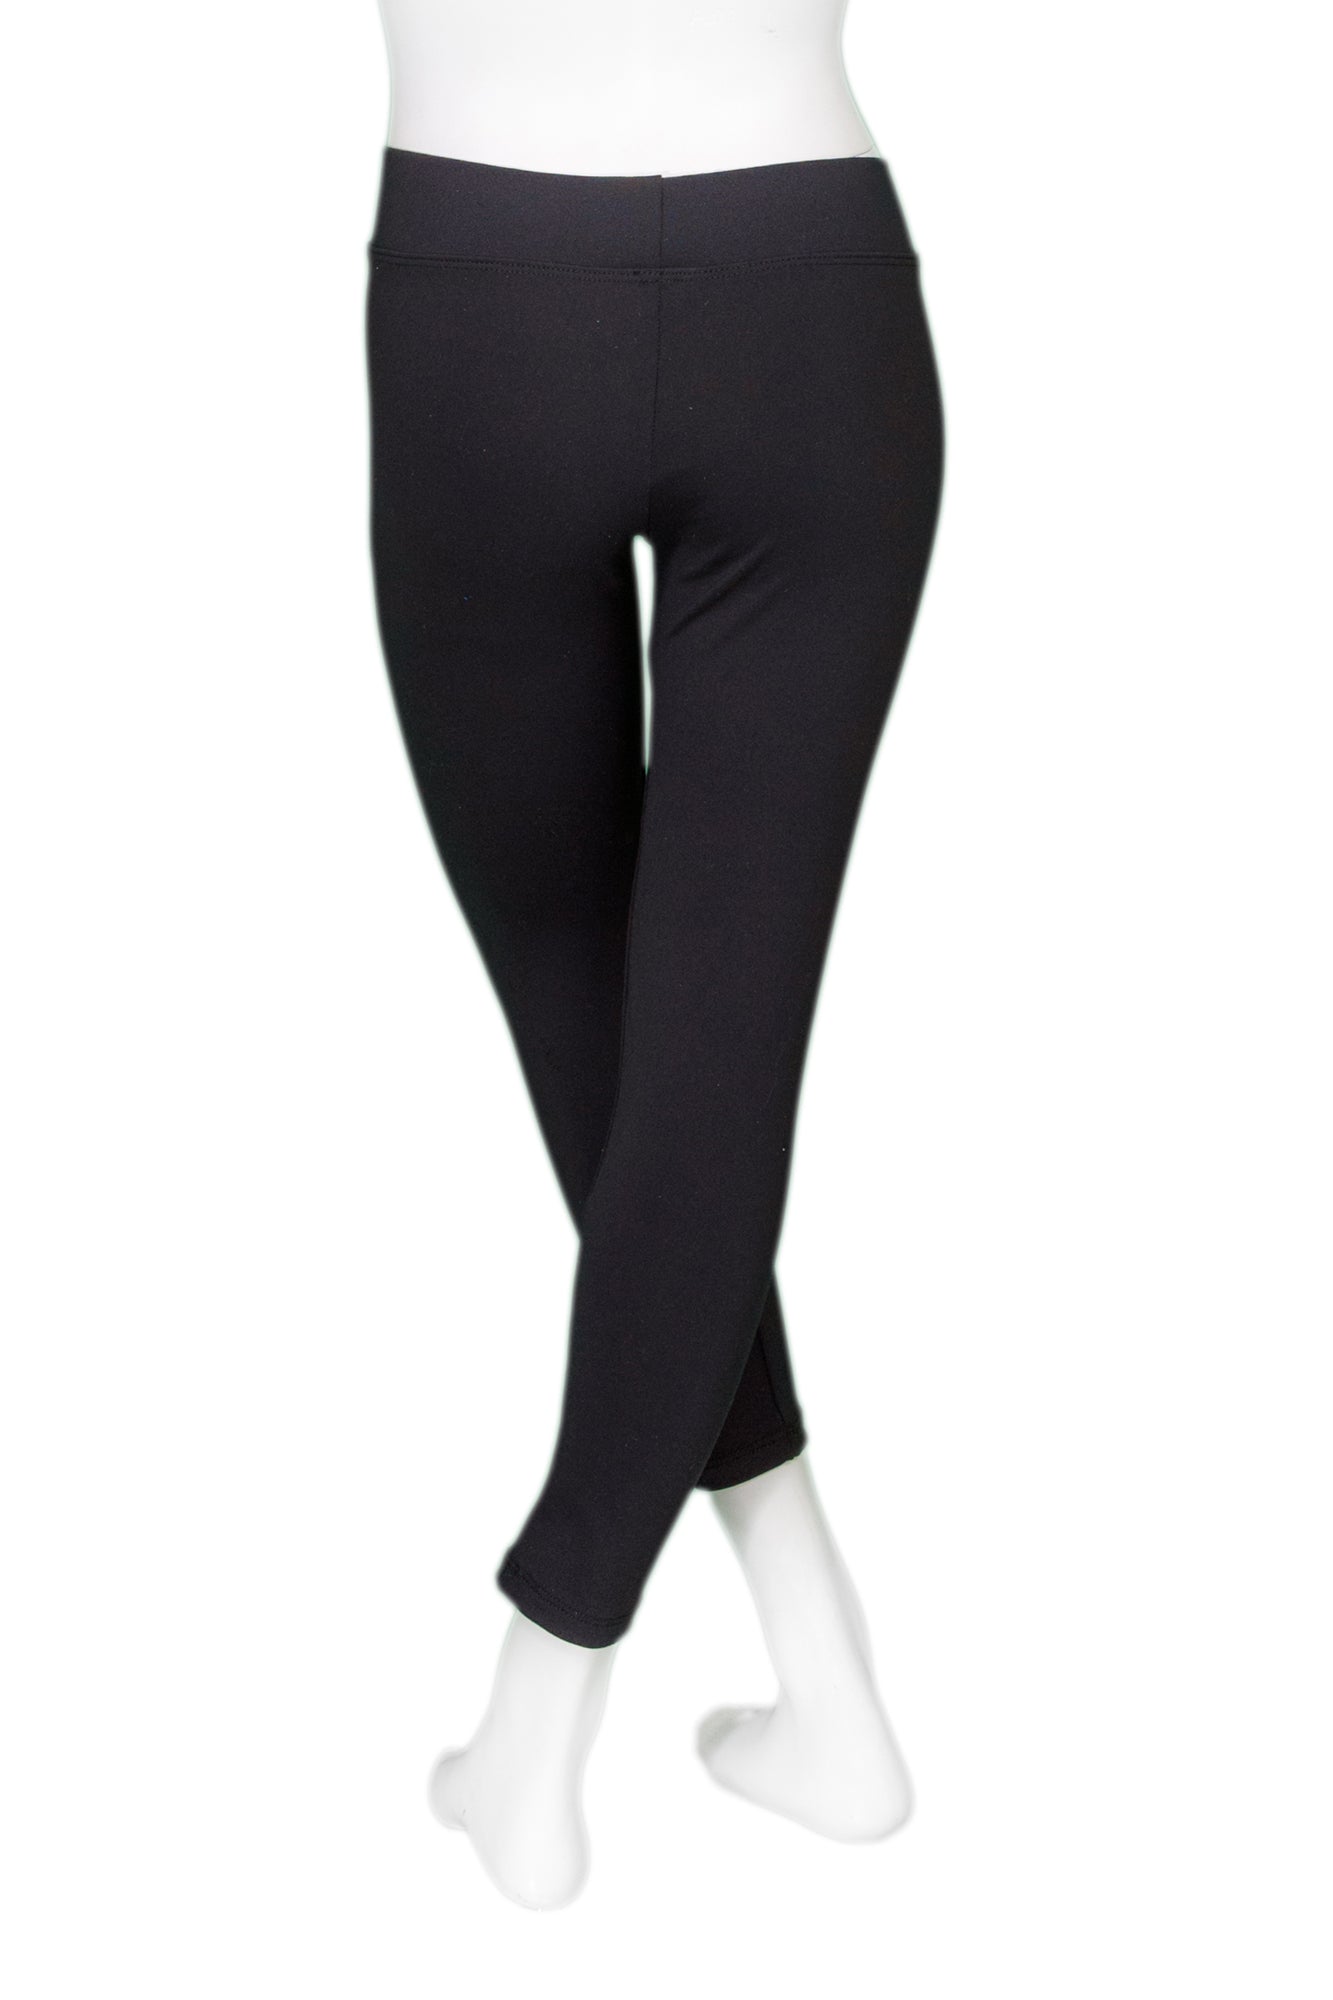 Plain black leggings for girls and women, Destira, 2023